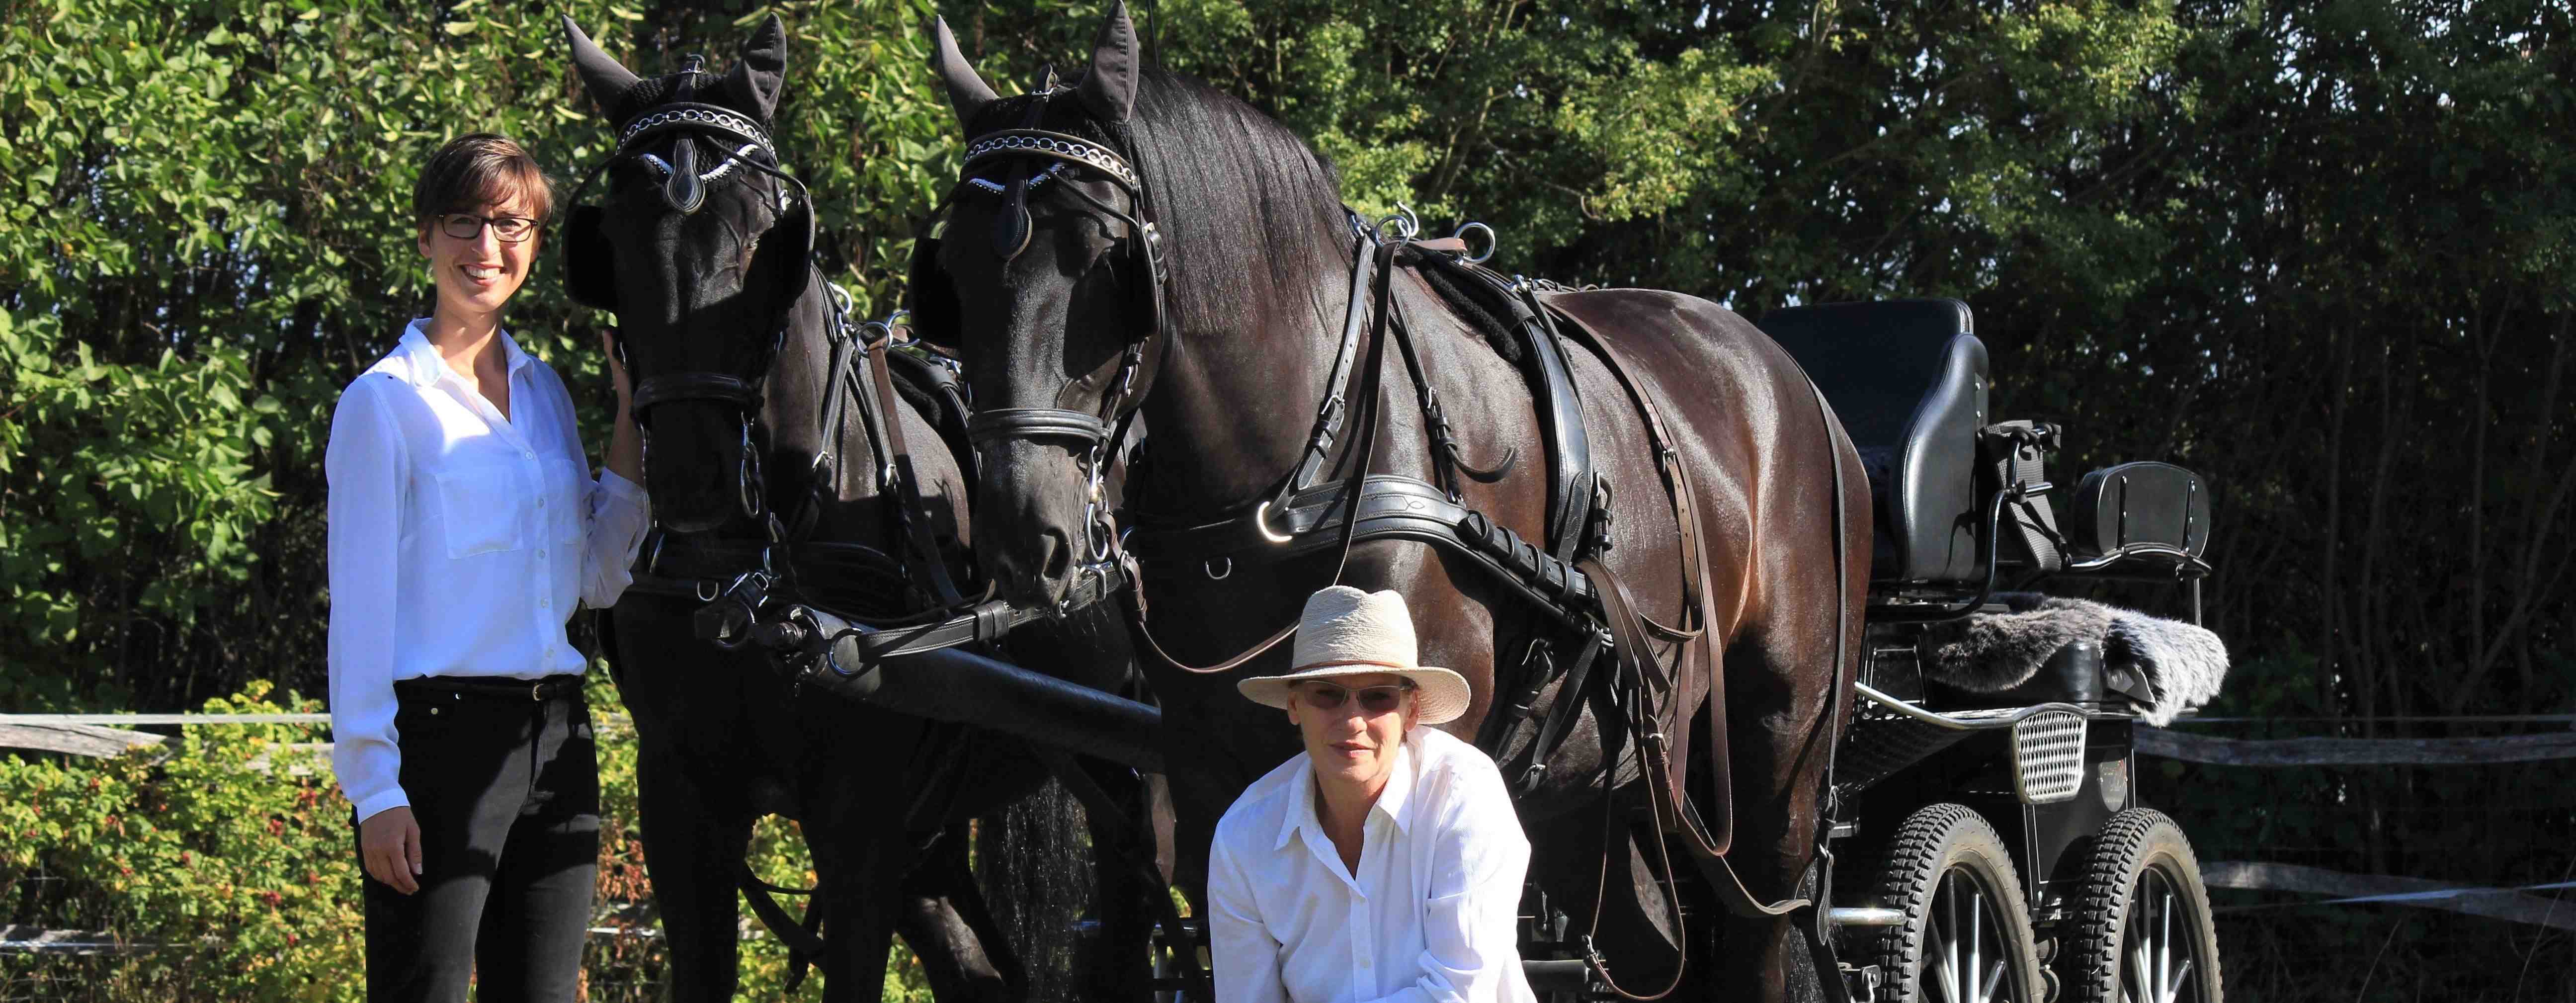 Pferdegestütztes Coaching im Havelland für Führungskräfte